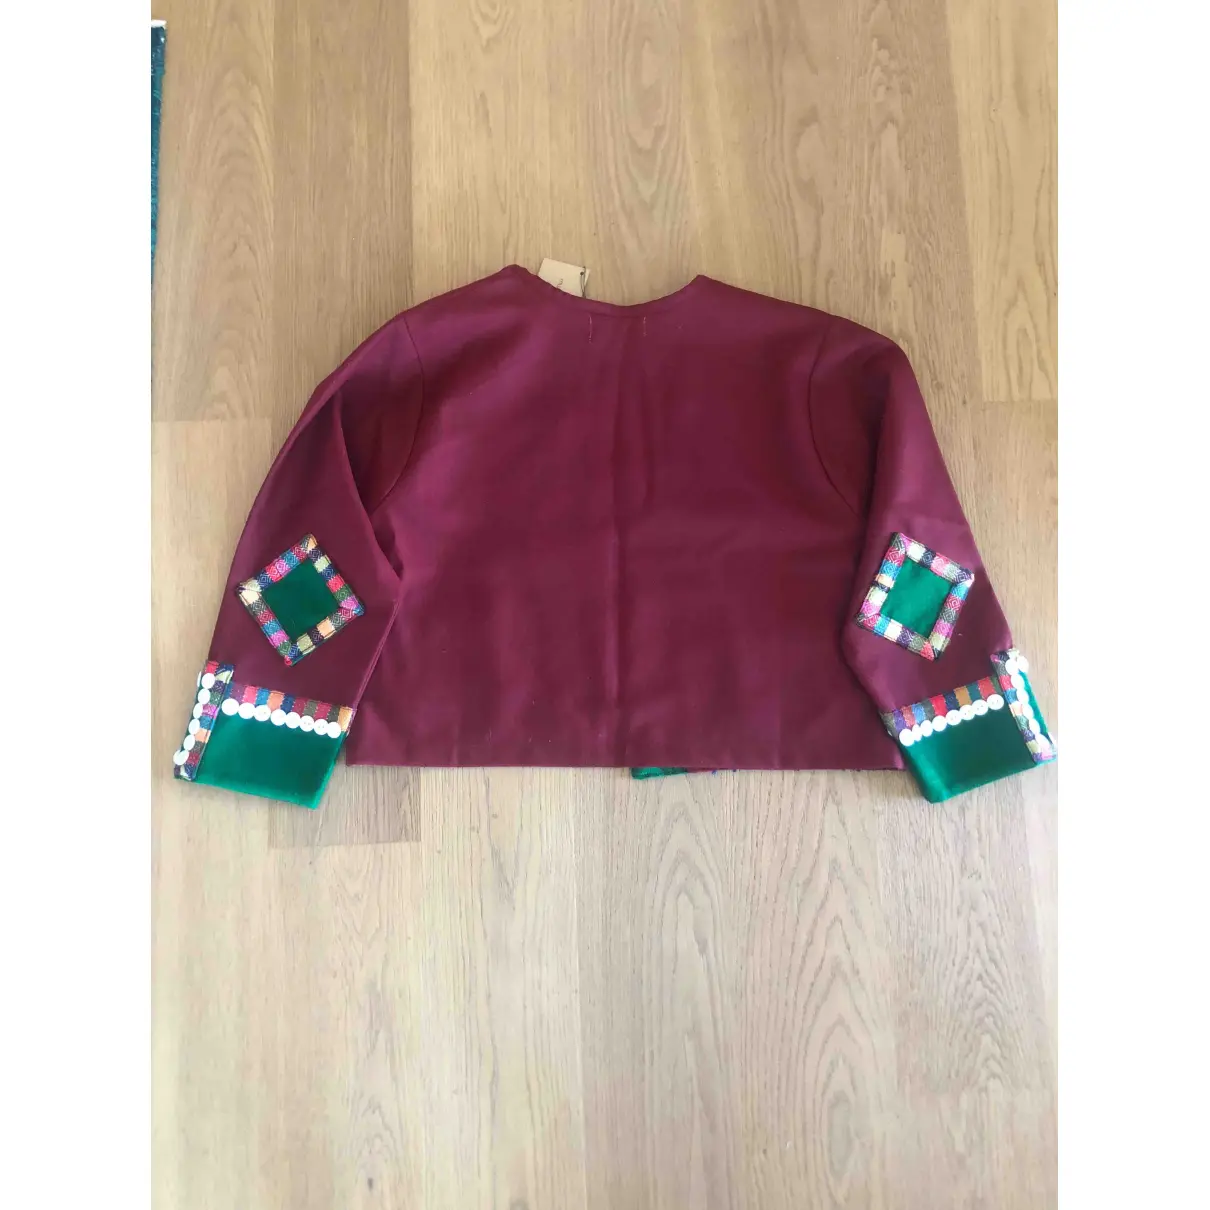 Buy Muzungu Sisters Wool short vest online